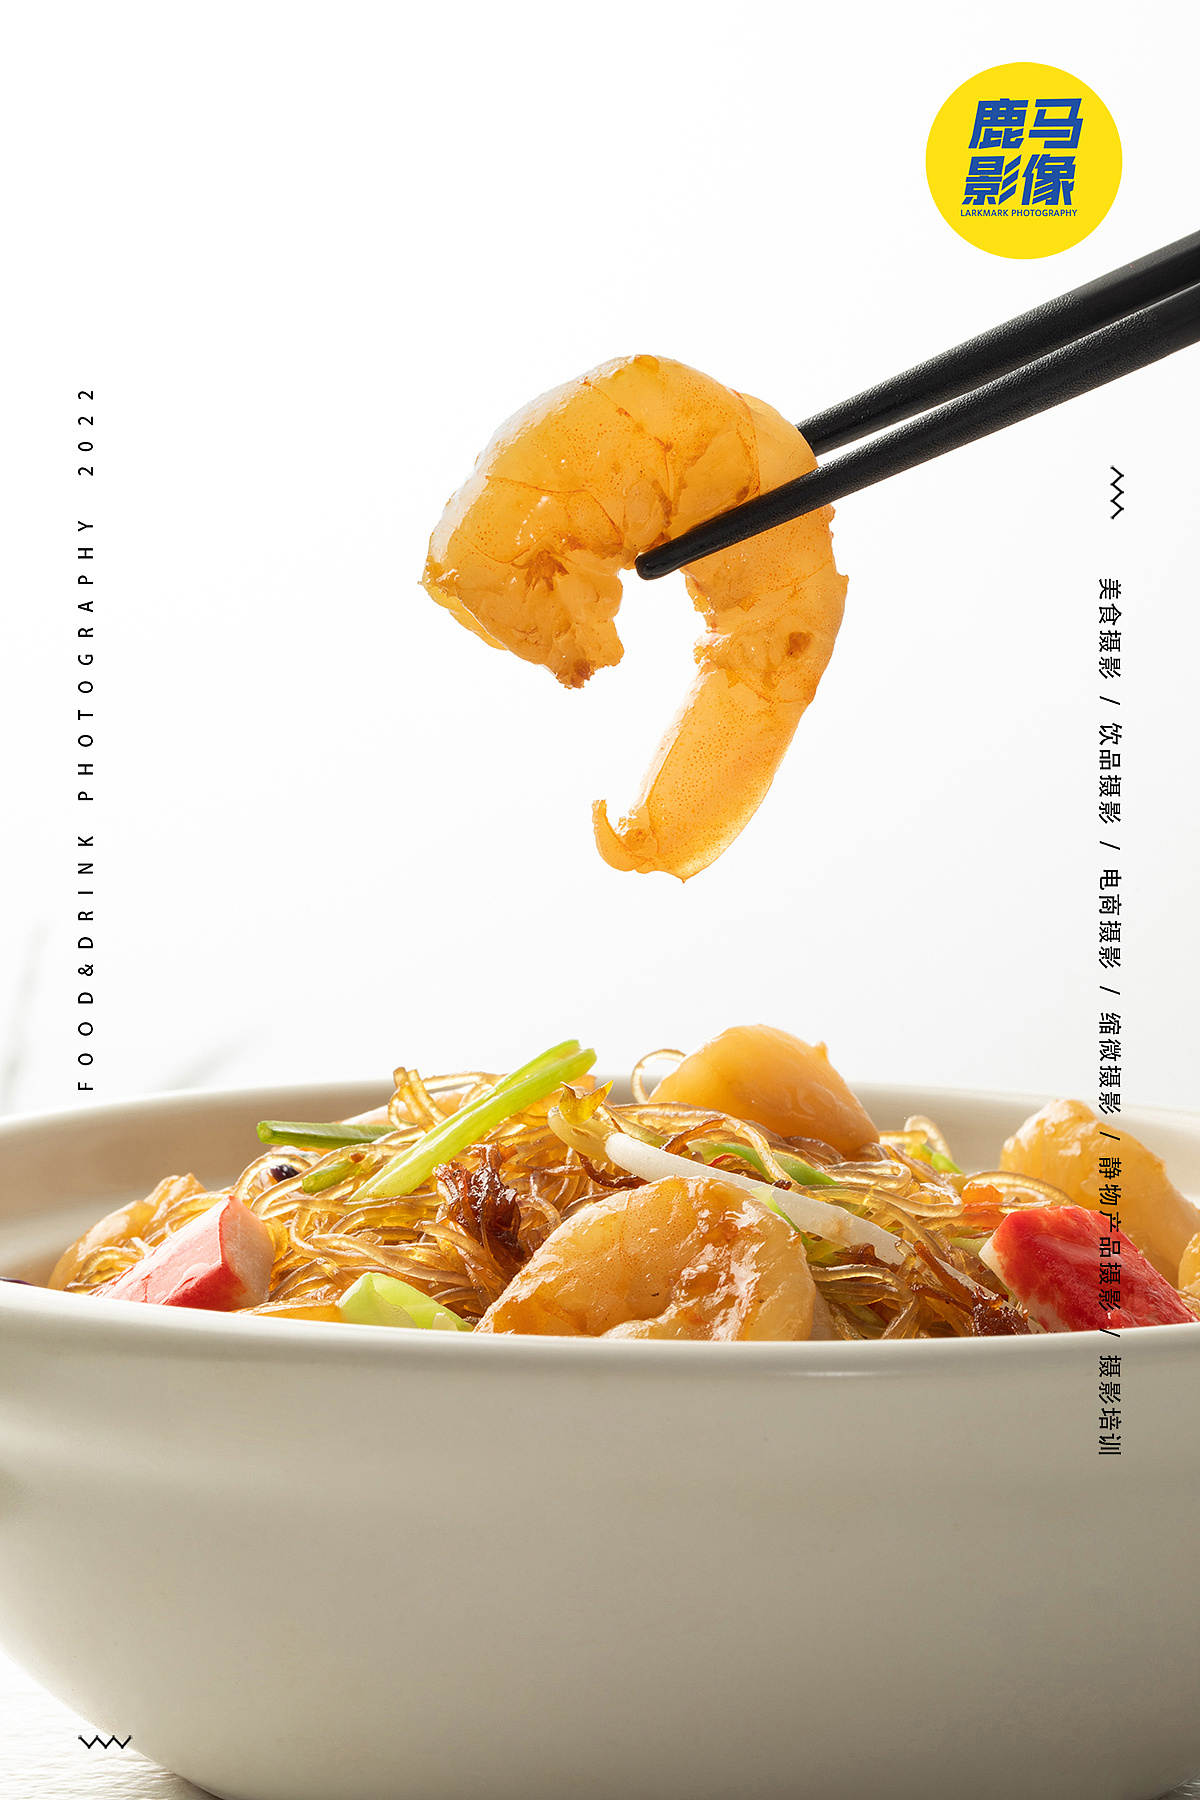 粤畔餐厅✖️鹿马影像 粤菜餐厅菜单拍摄·美食菜谱拍照 